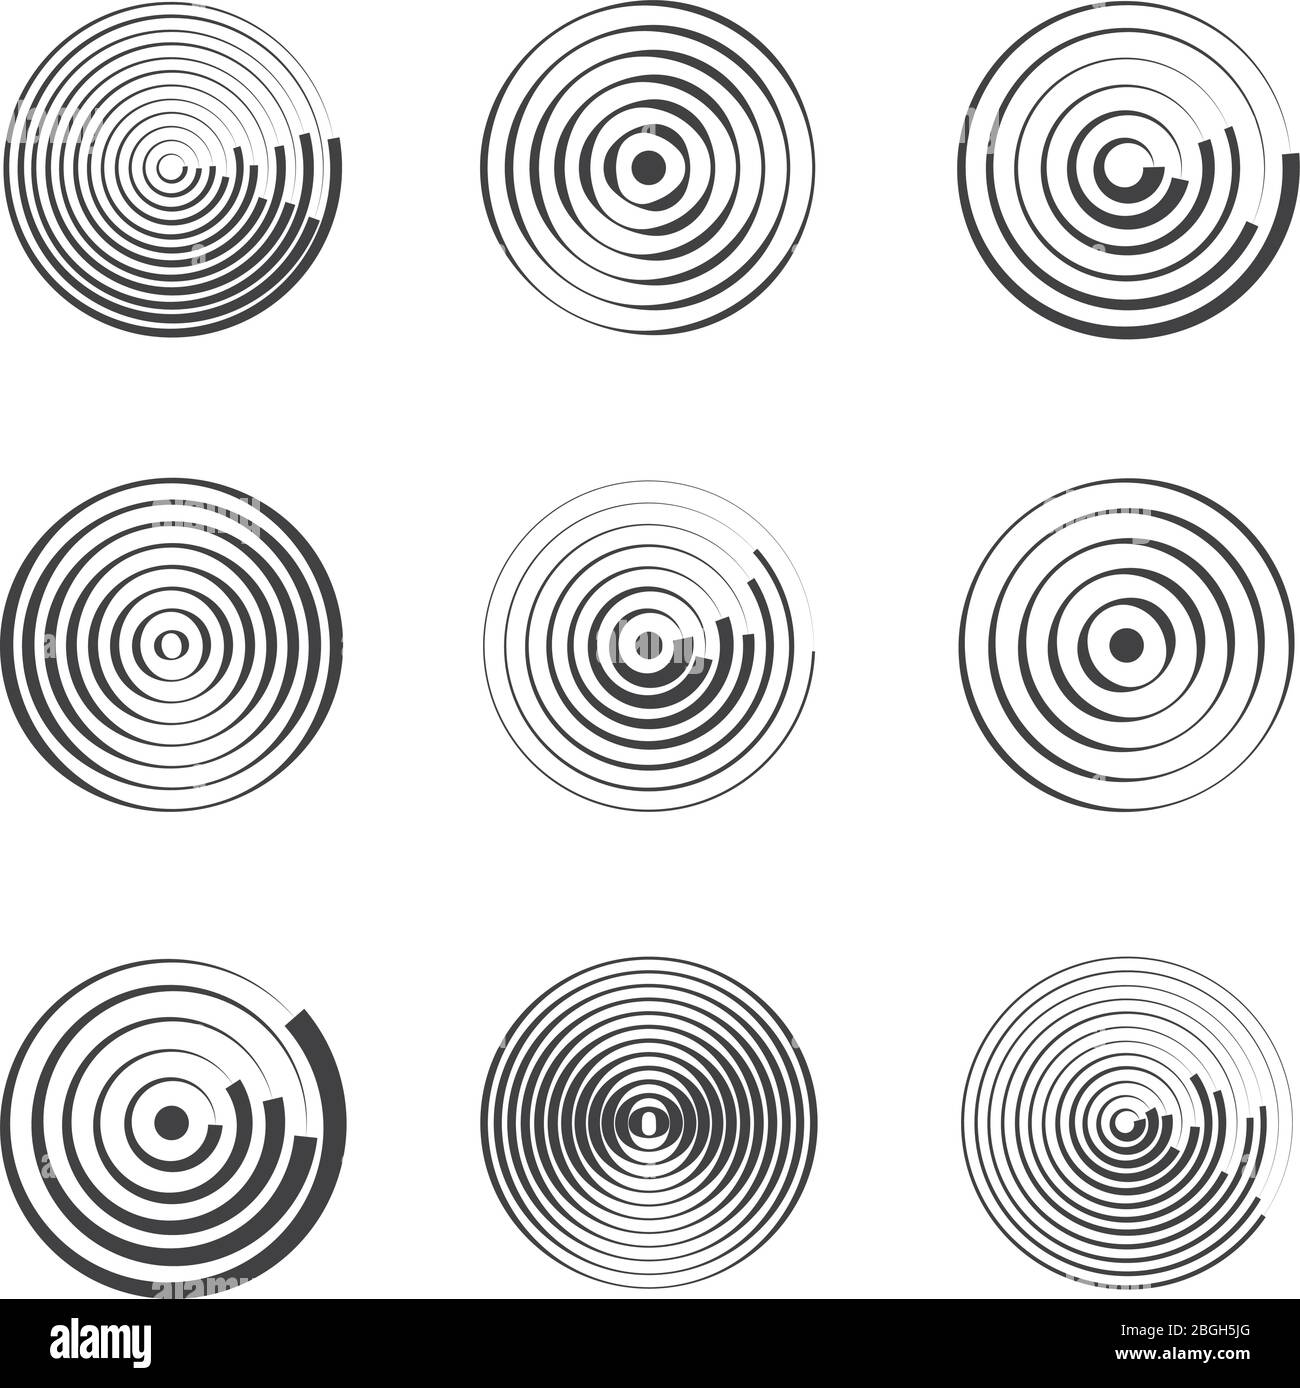 Cerchi concentrici astratti motivi vettoriali geometrici. Forme circolari e onde rotonde. Anelli con linee radiali. Schema radiale circolare, illustrazione epicentro dell'anello Illustrazione Vettoriale